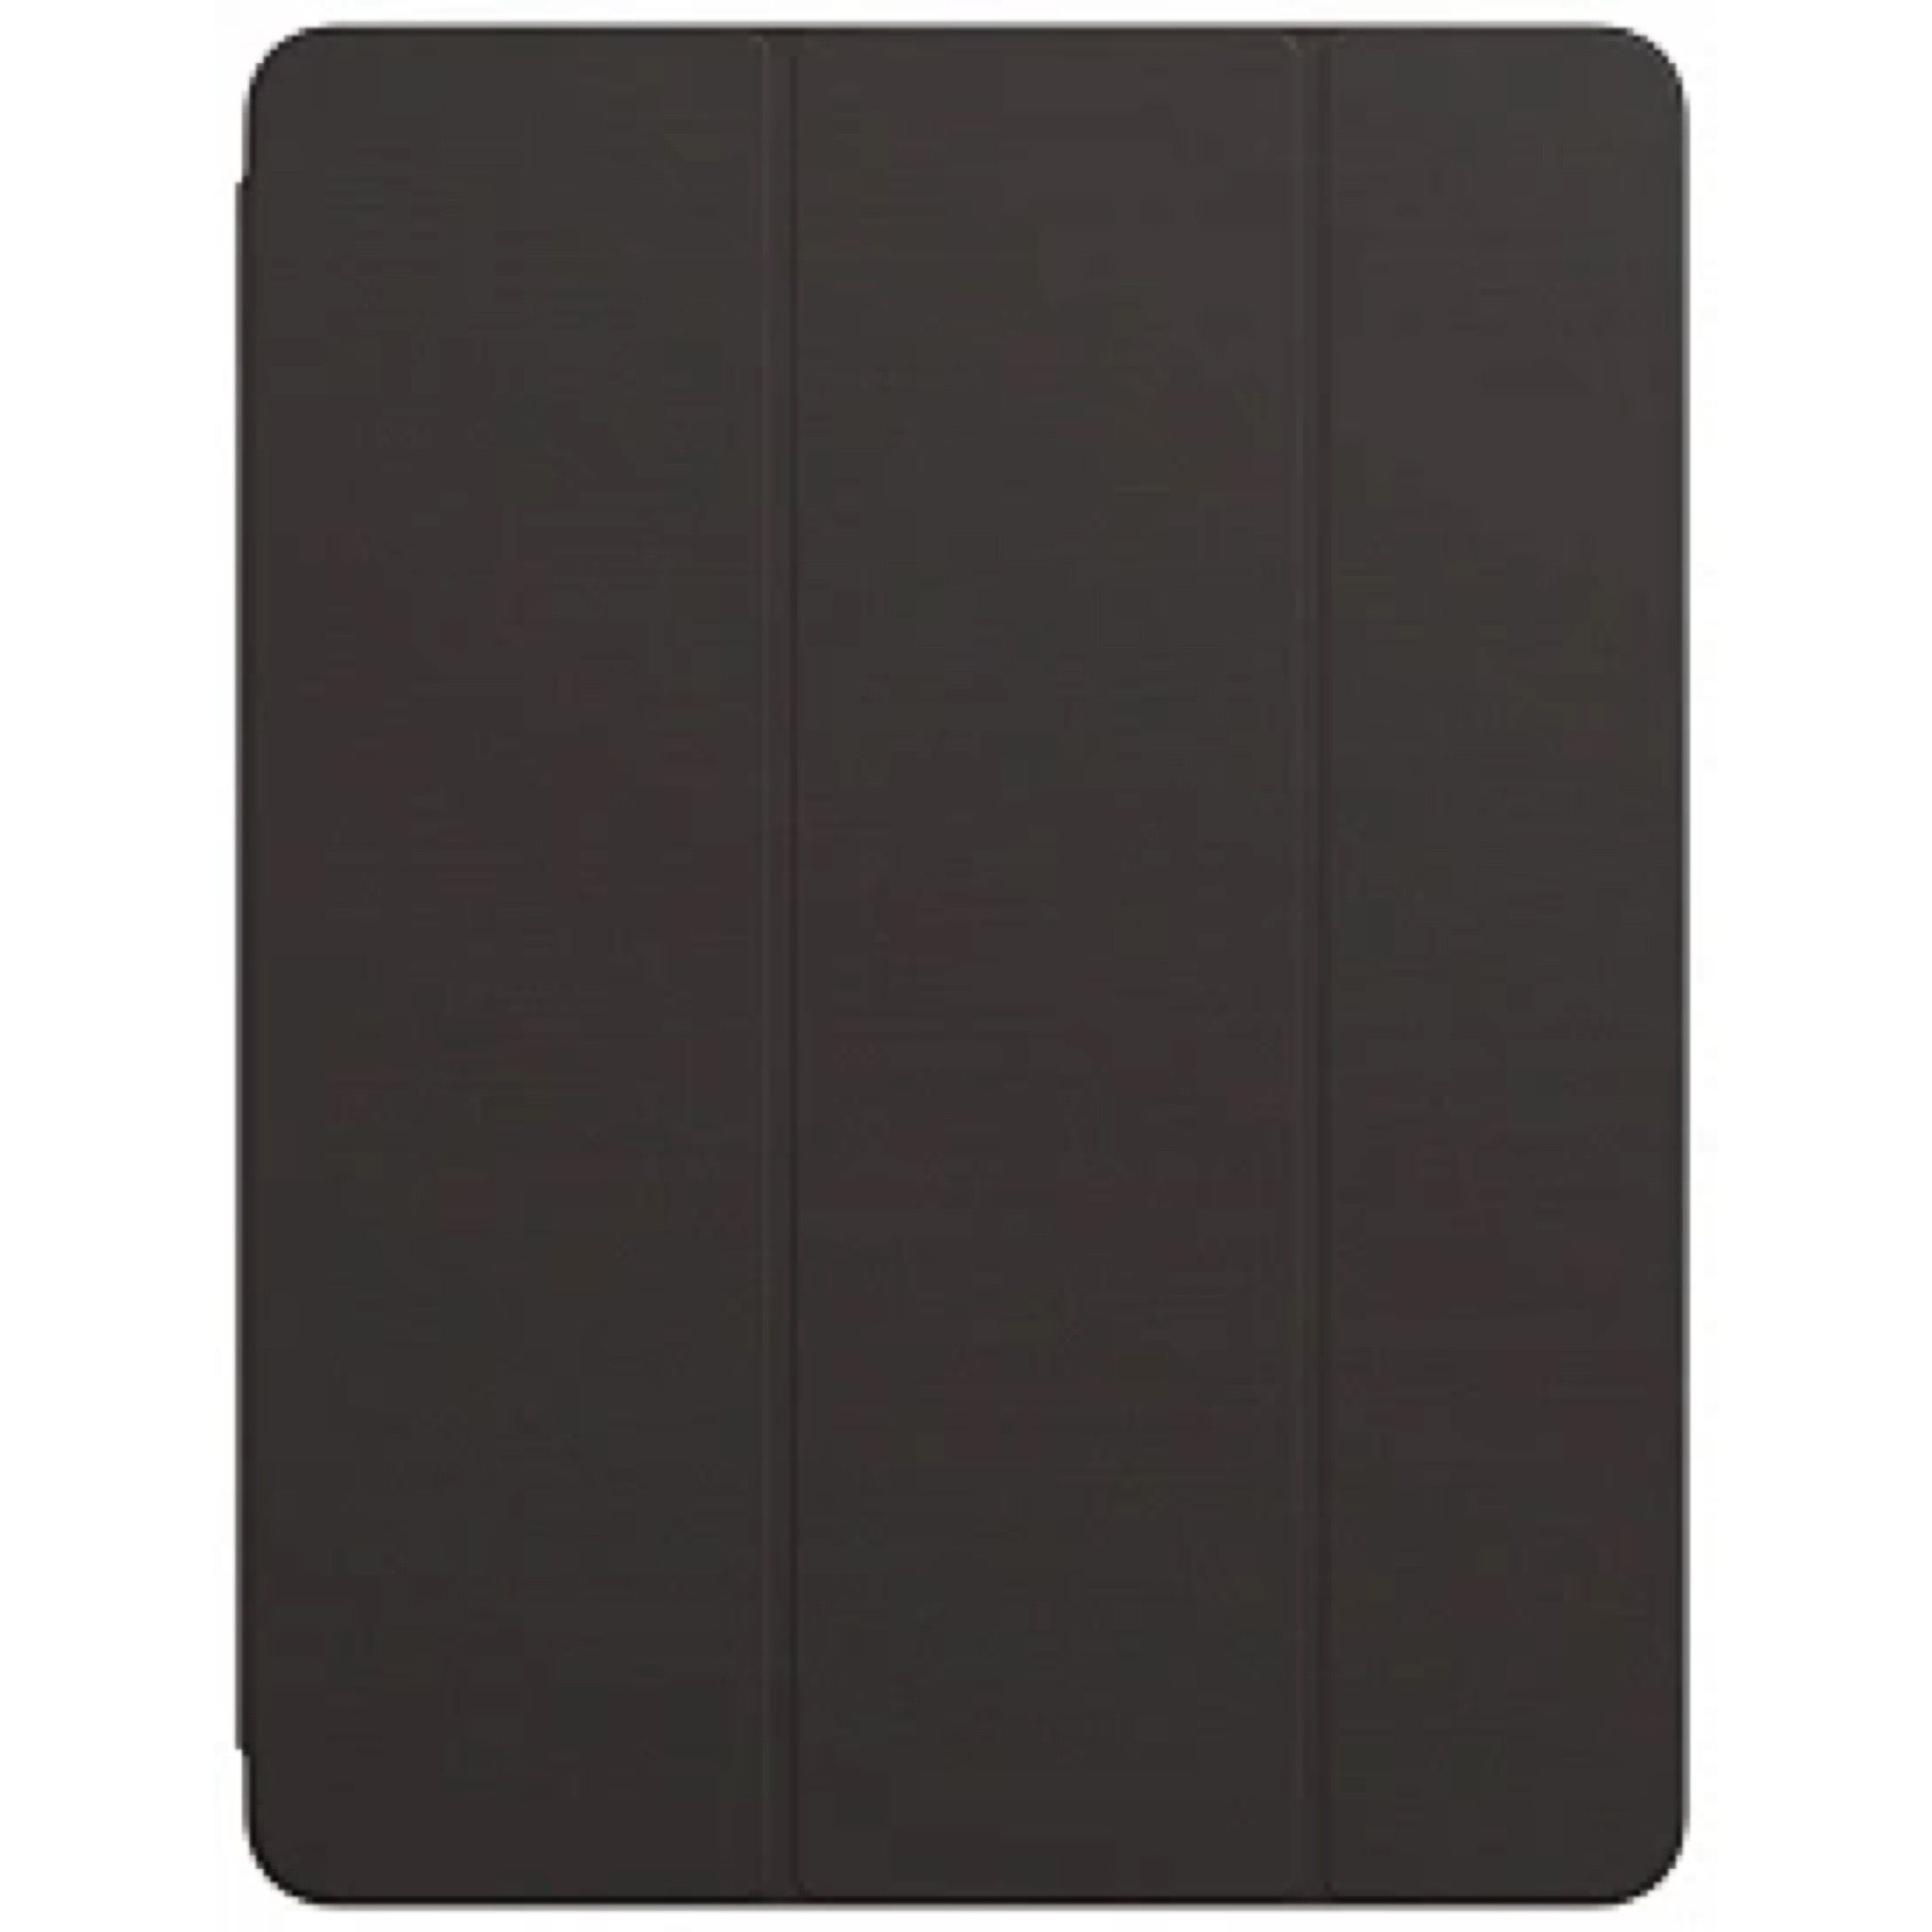 Чехол iPad Pro 12.9 2021 Smart Folio, чёрный